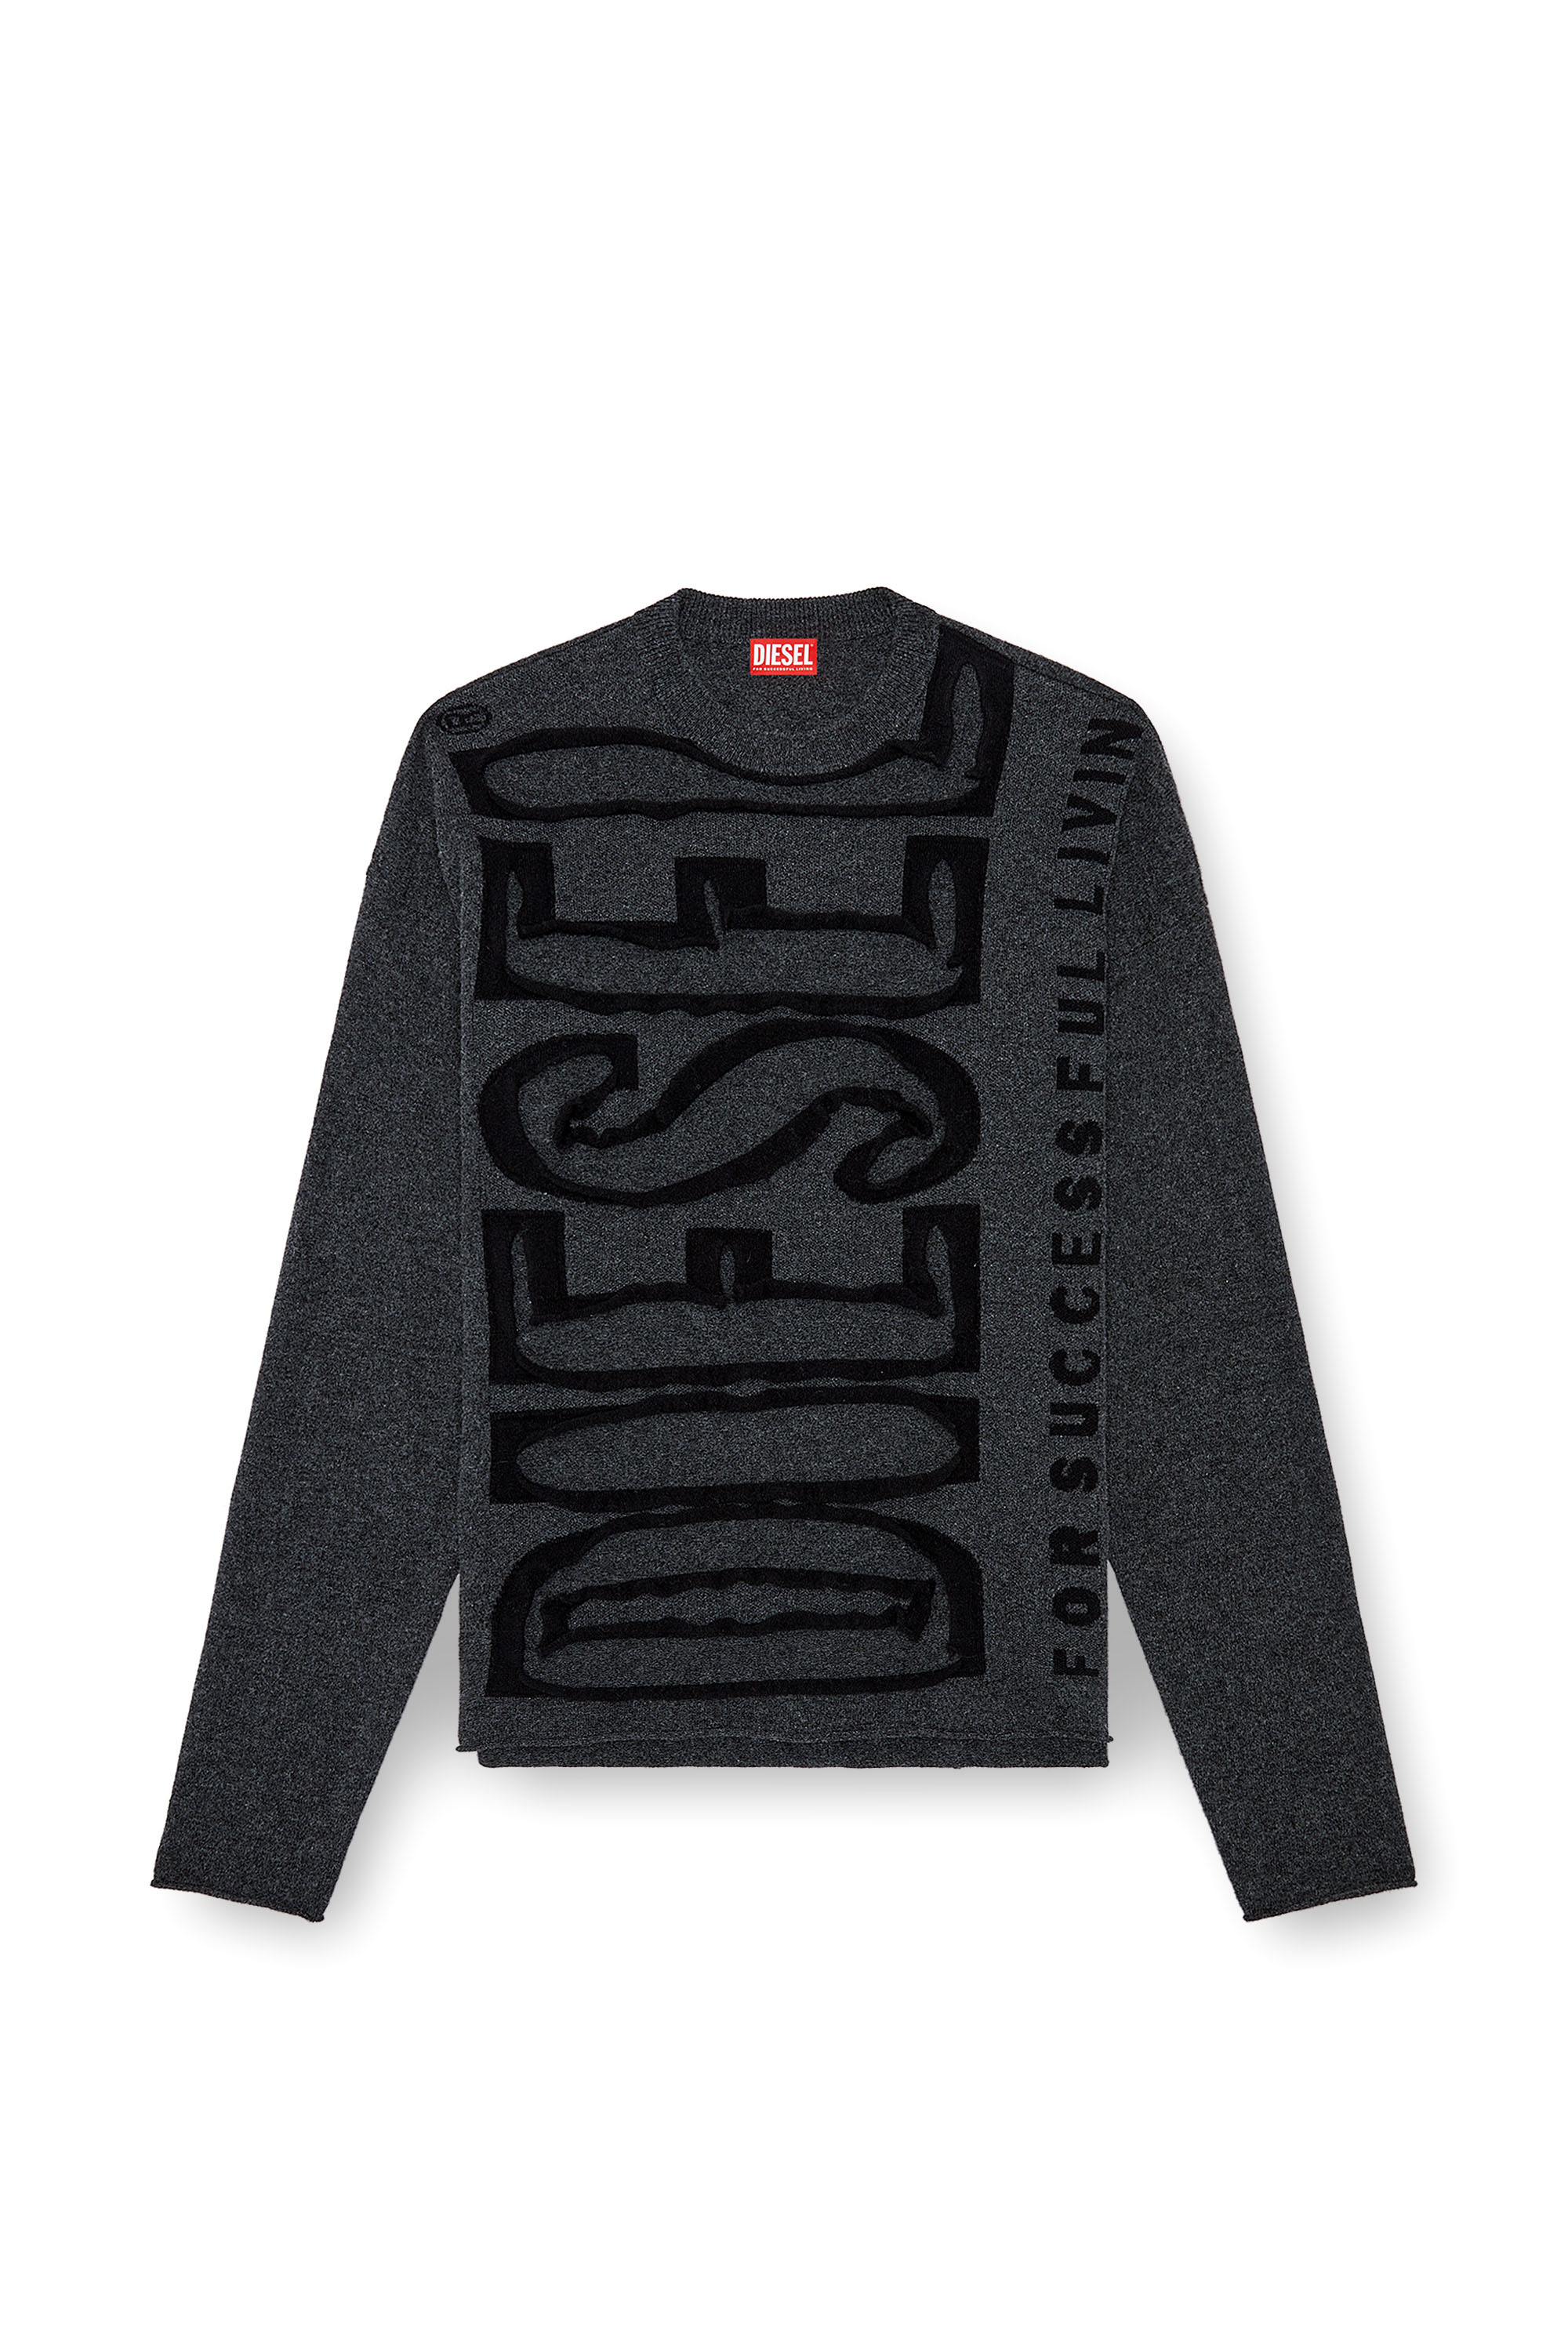 Diesel - K-FLOYD, Hombre Jersey de lana con Super Logo despegado in Gris - Image 5